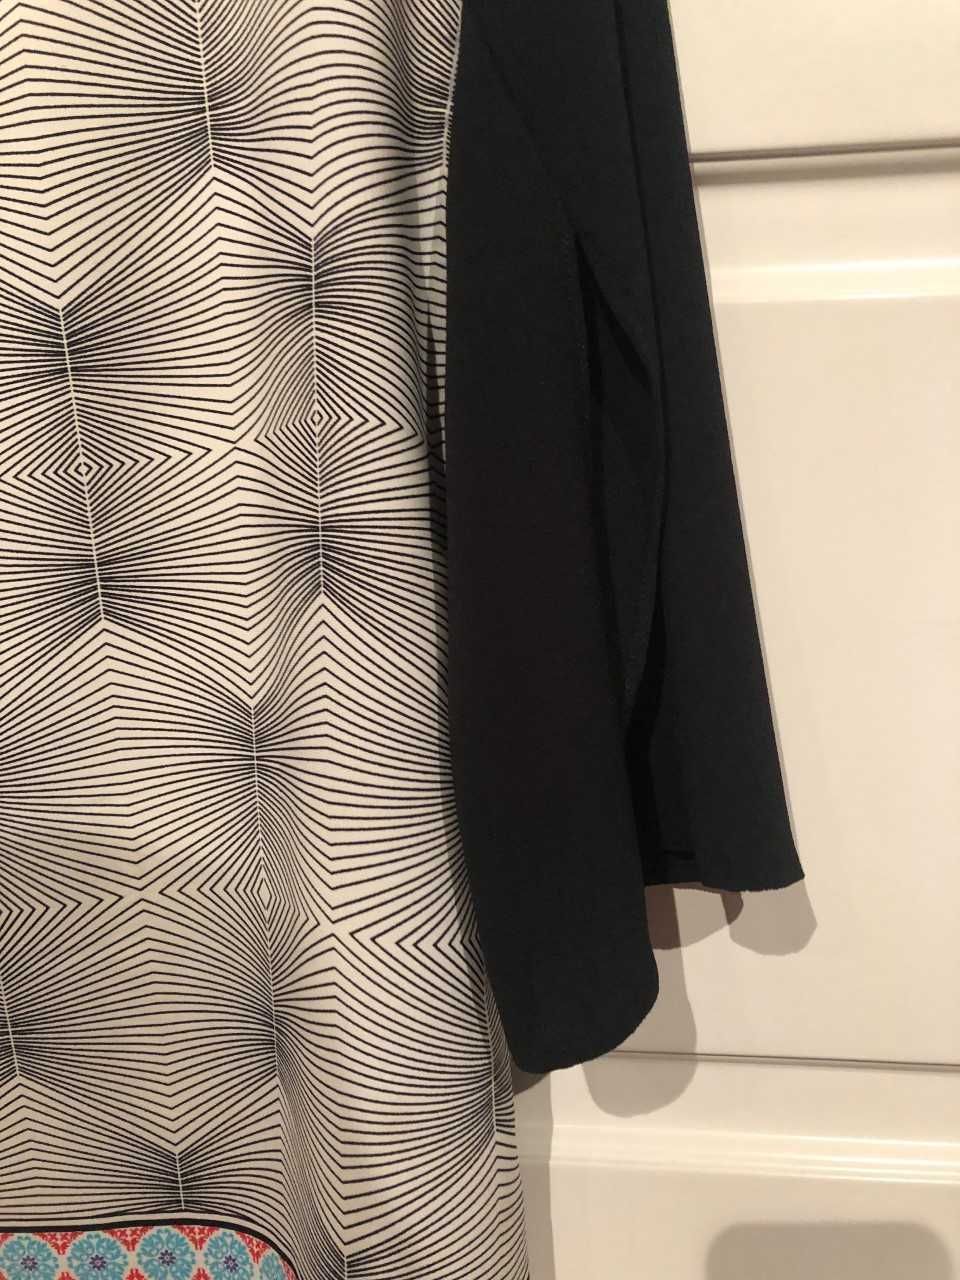 túnica/vestido com padrão em tons de preto marca  QUINZE TRENTE   M